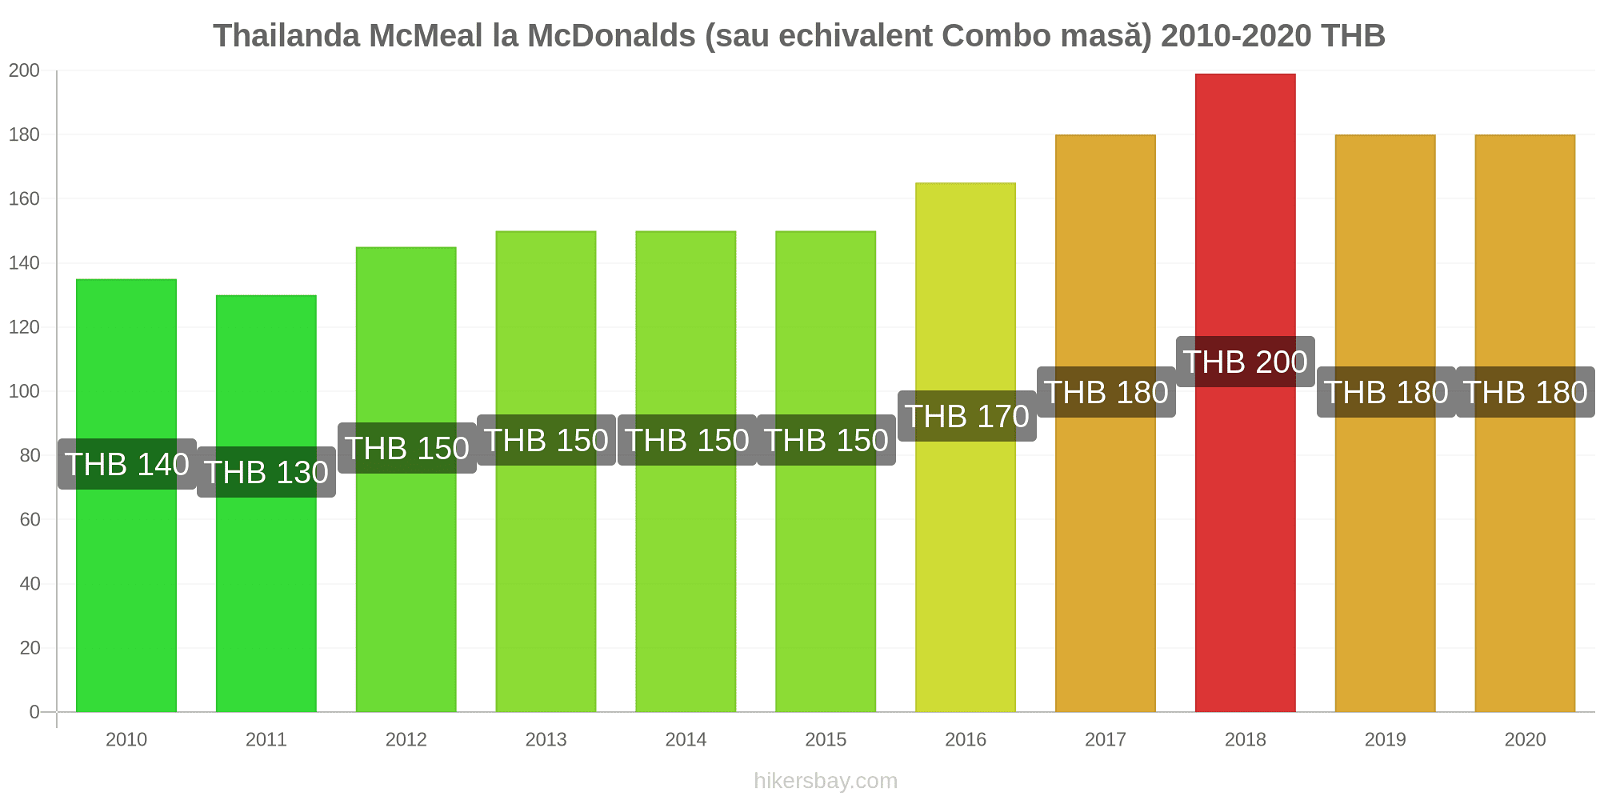 Thailanda modificări de preț McMeal la McDonalds (sau echivalent Combo masă) hikersbay.com